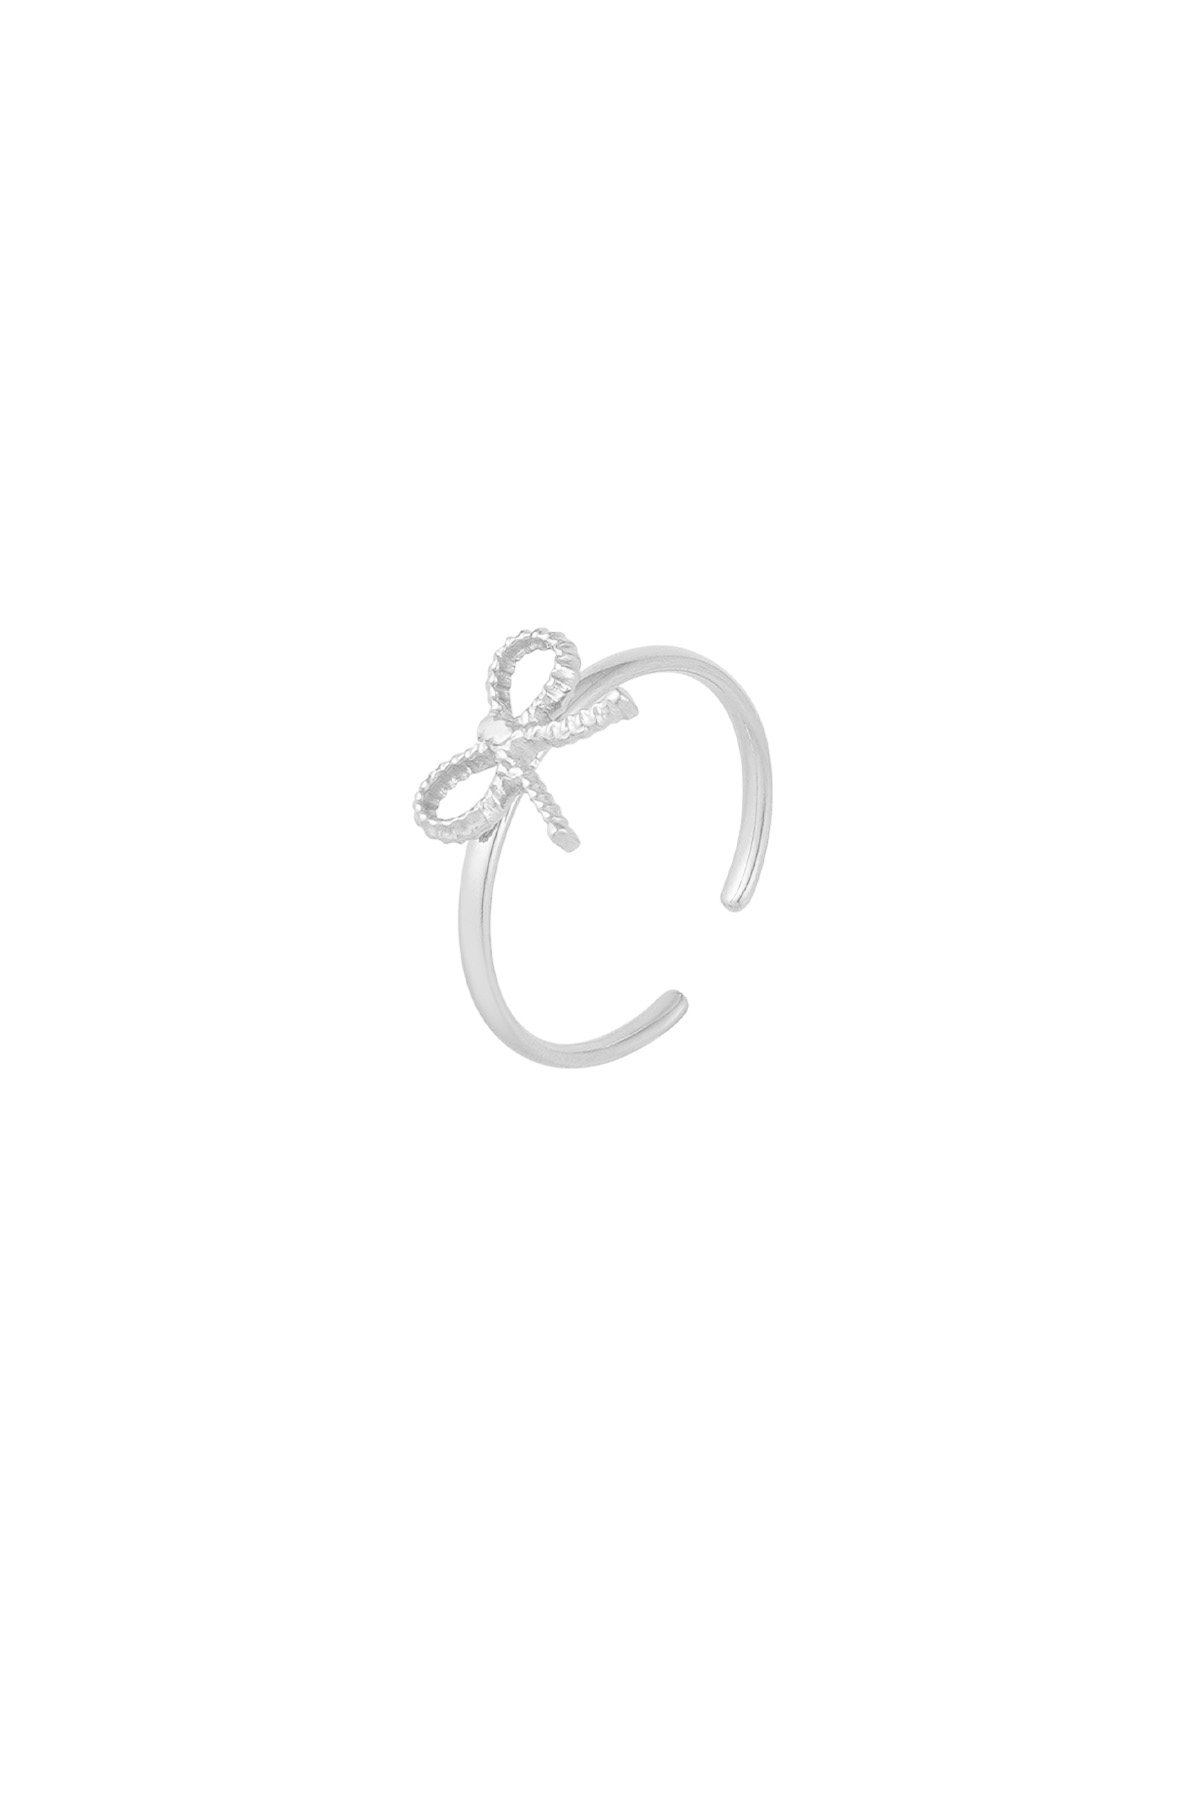 Ring Schleife Basic - silber